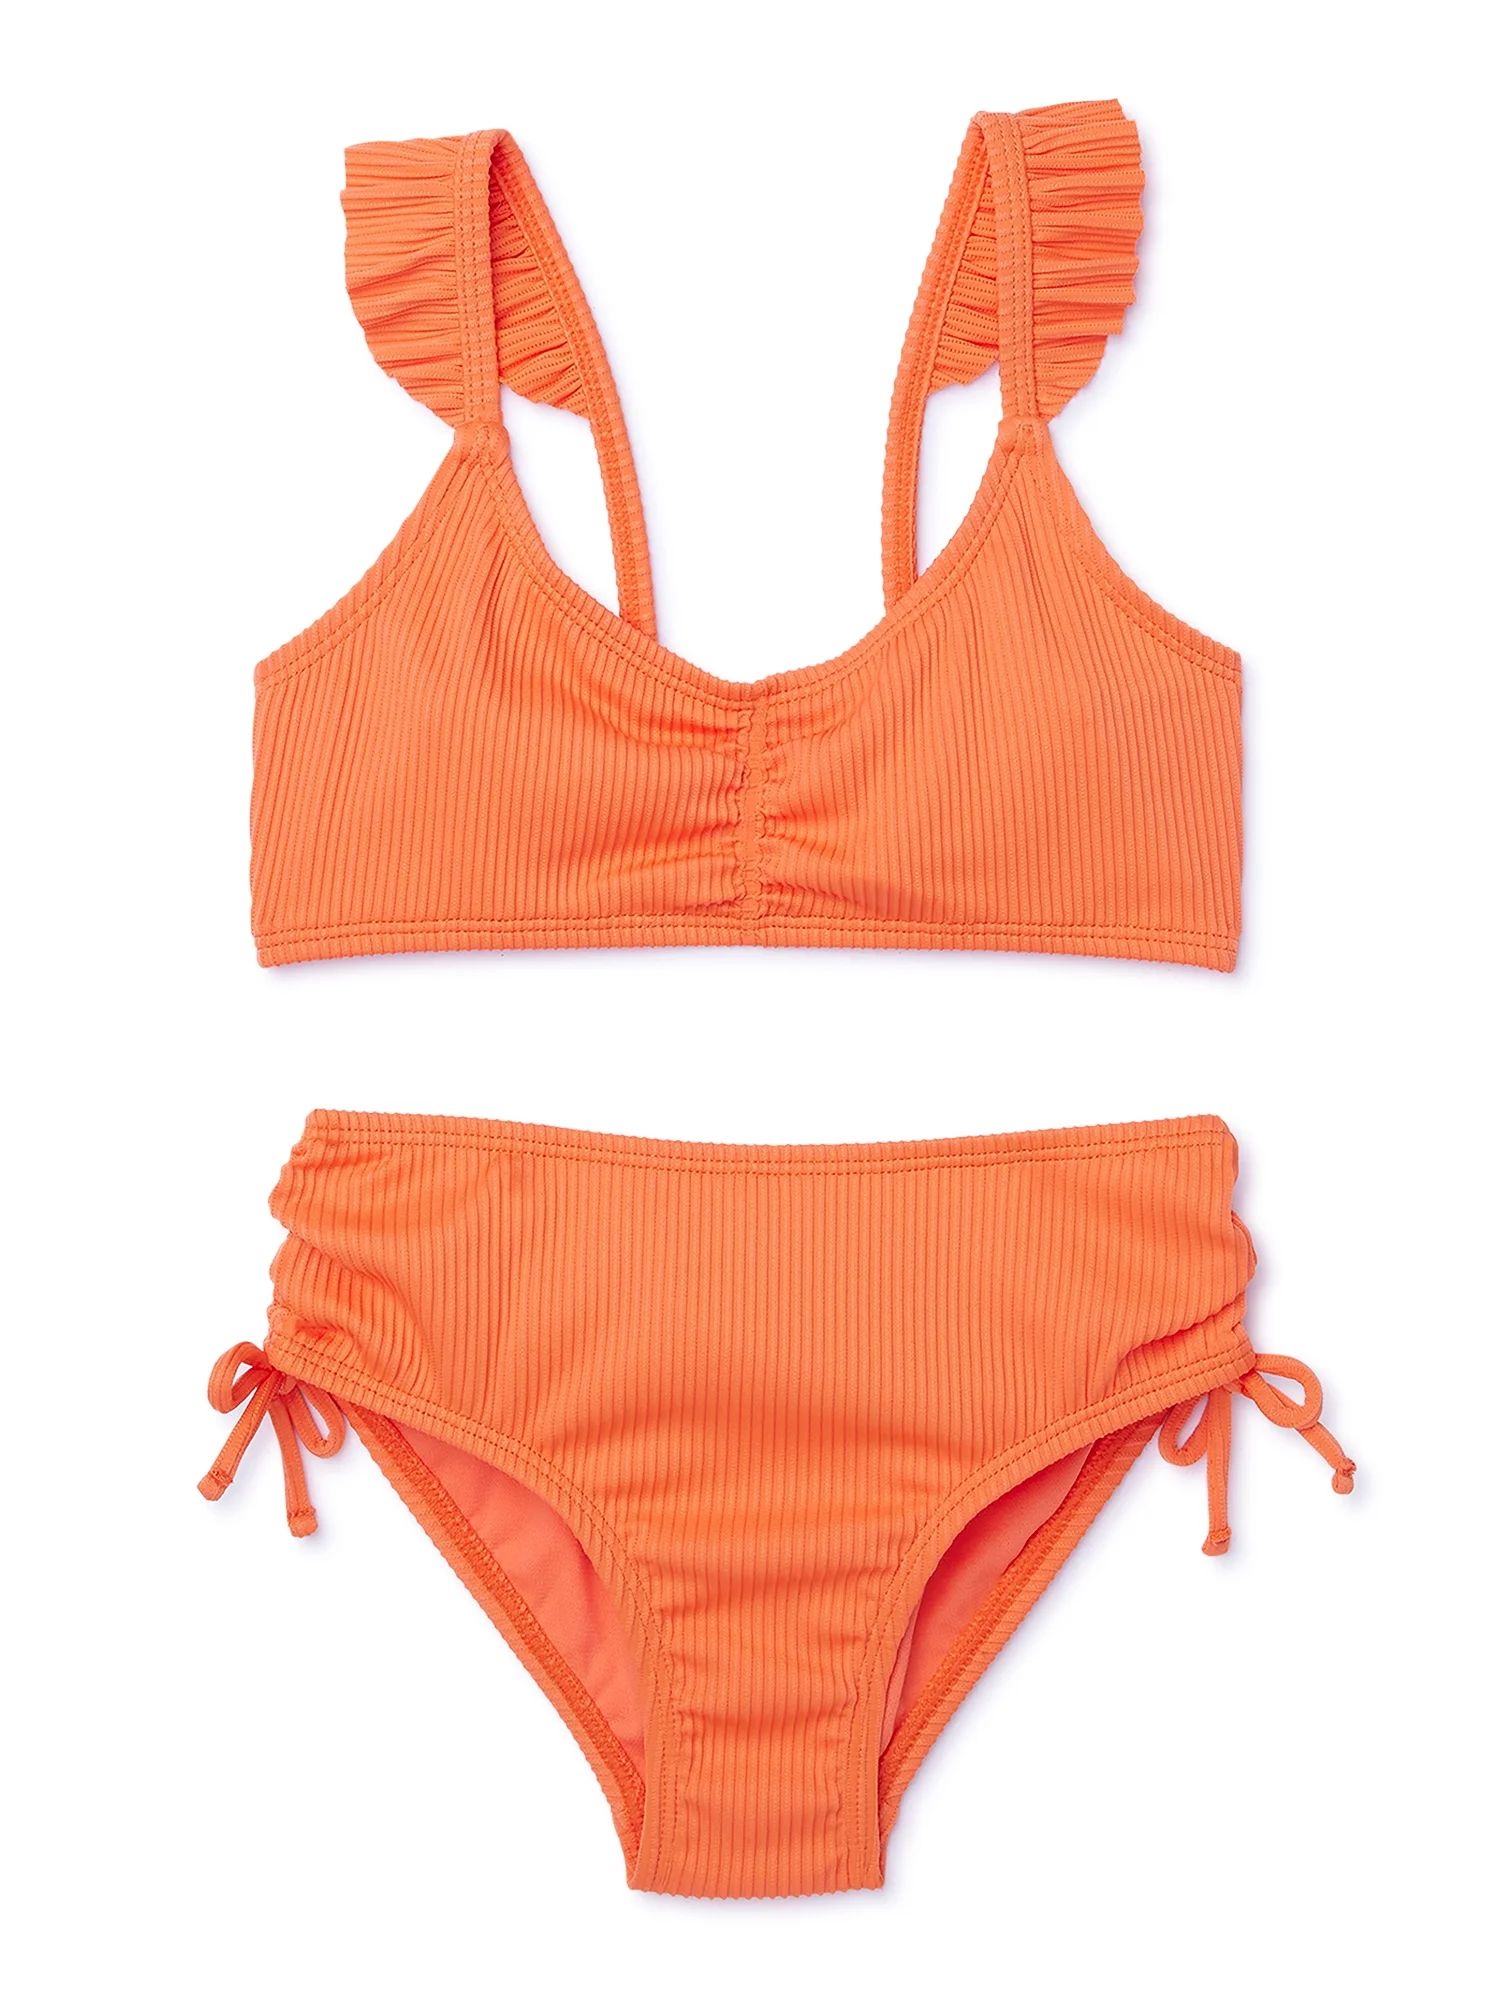 Wonder Nation Girls Ruffle Strap Bikini Swimsuit with UPF 50, 2-Piece, Sizes 4-18 | Walmart (US)